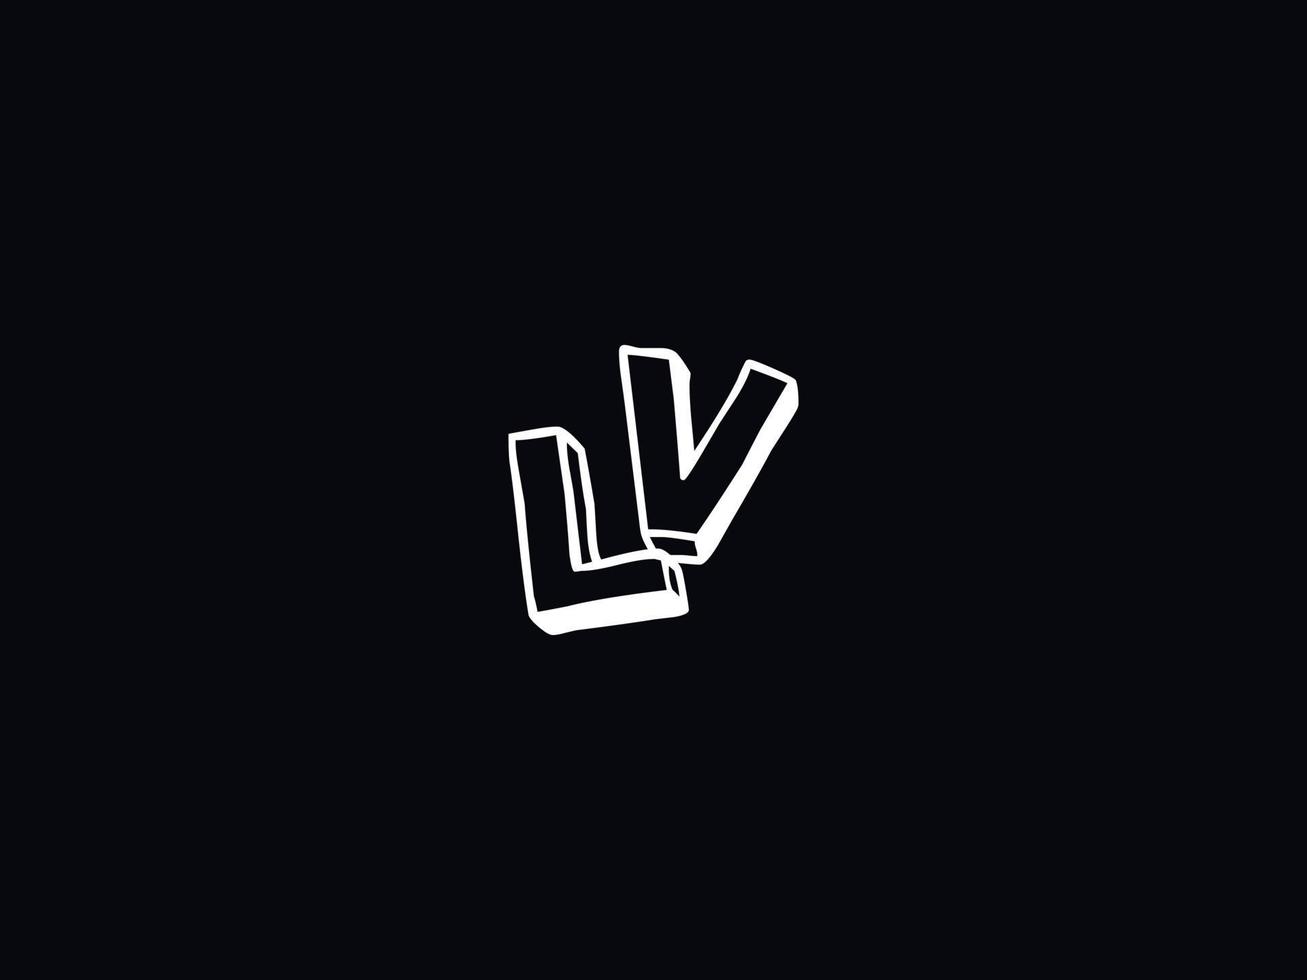 moderno lv vl logo letra vector icono diseño